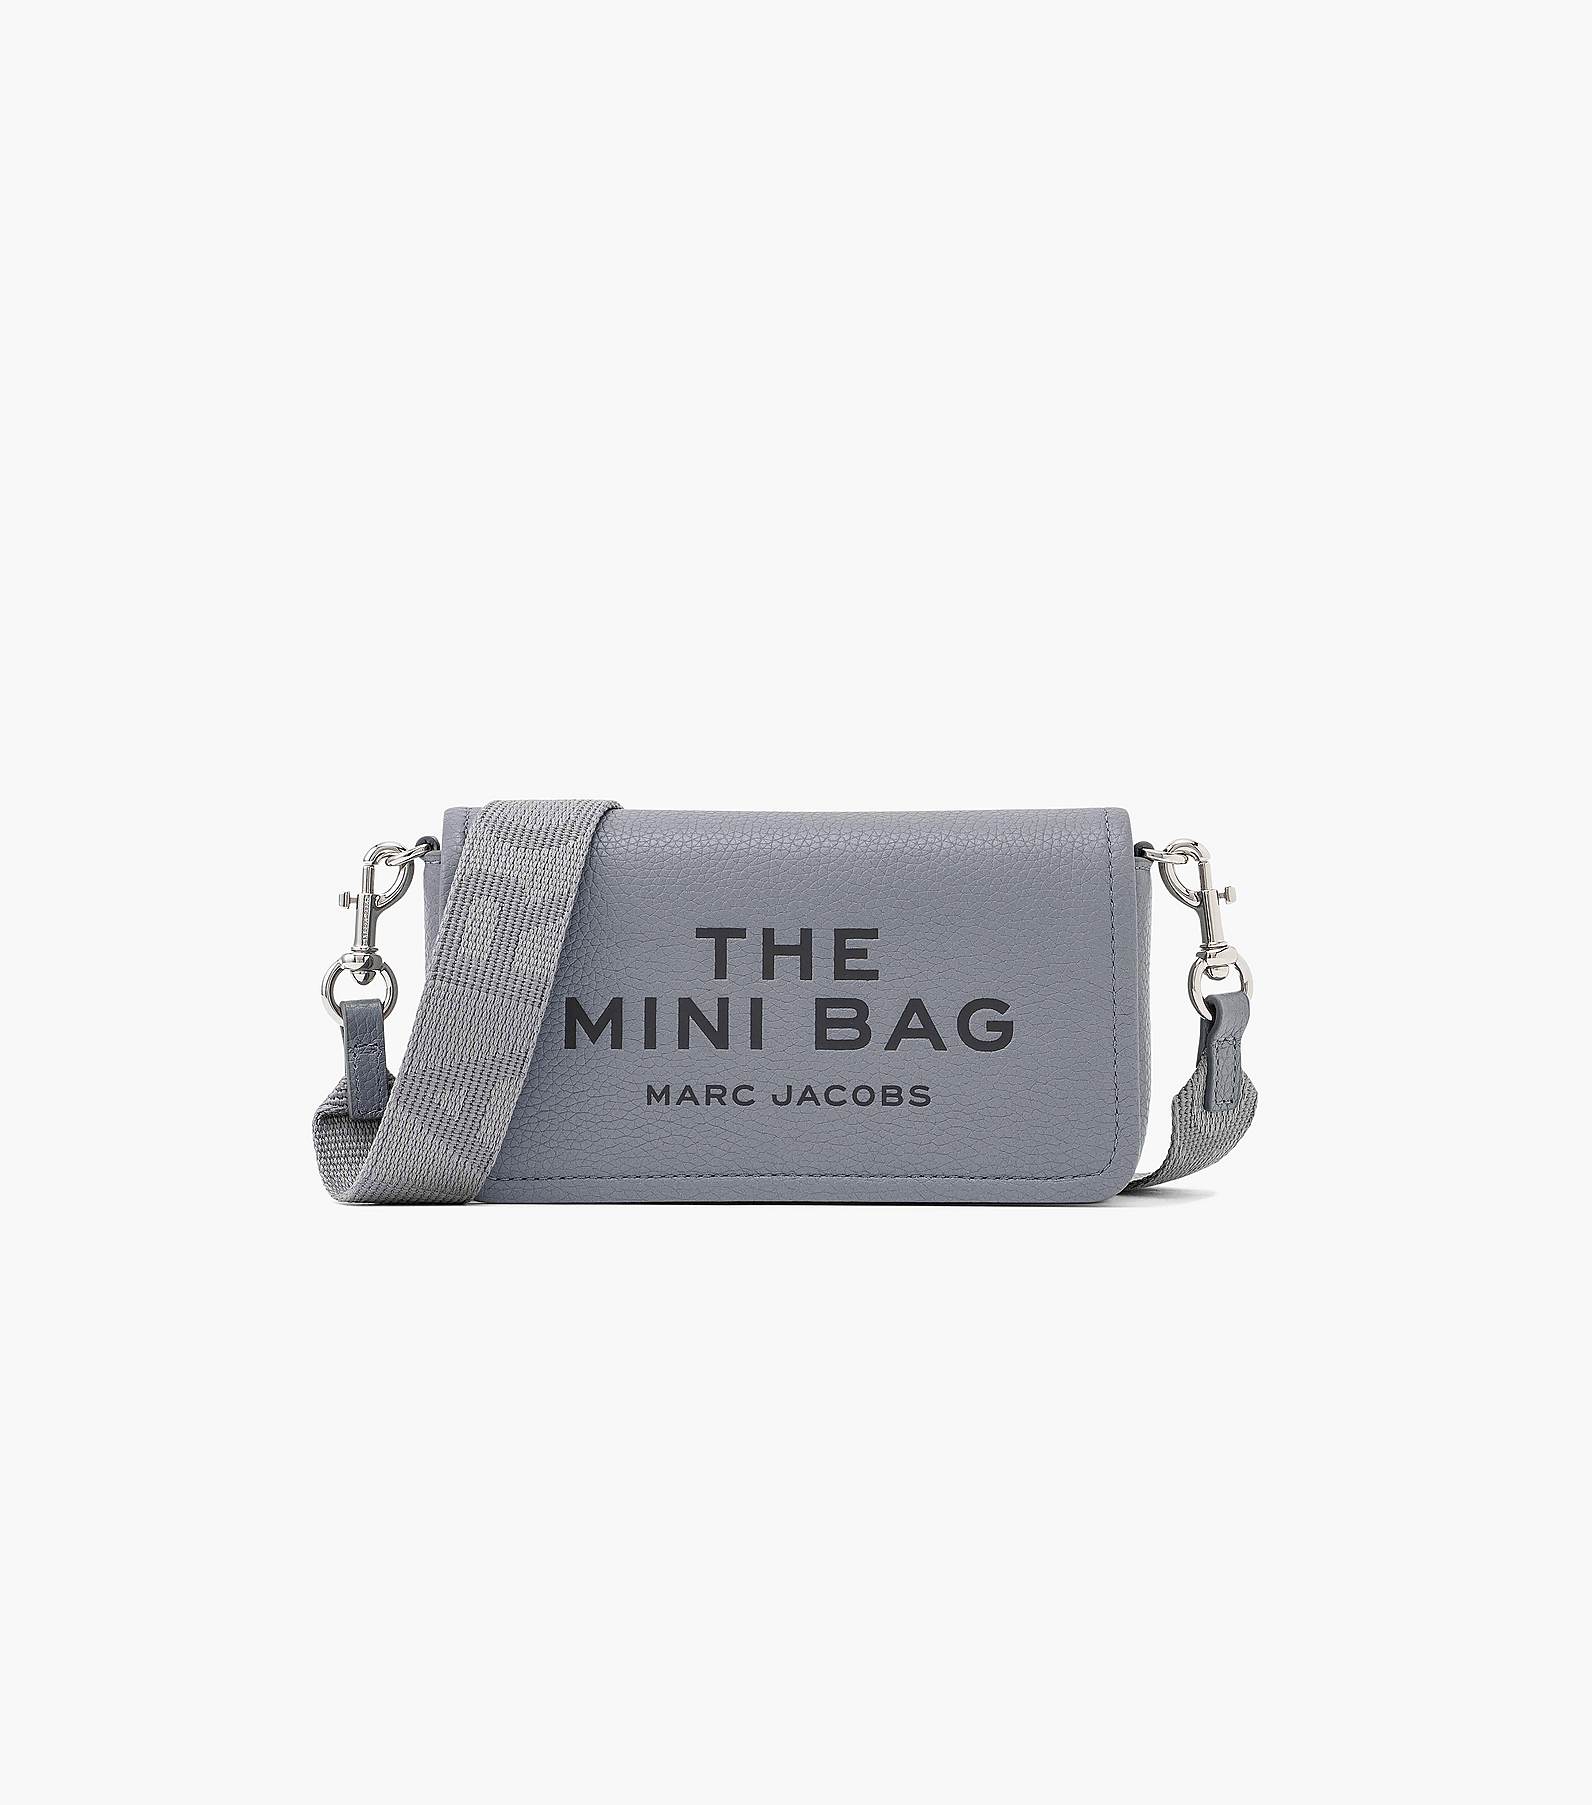 THE LEATHER MINI BAG